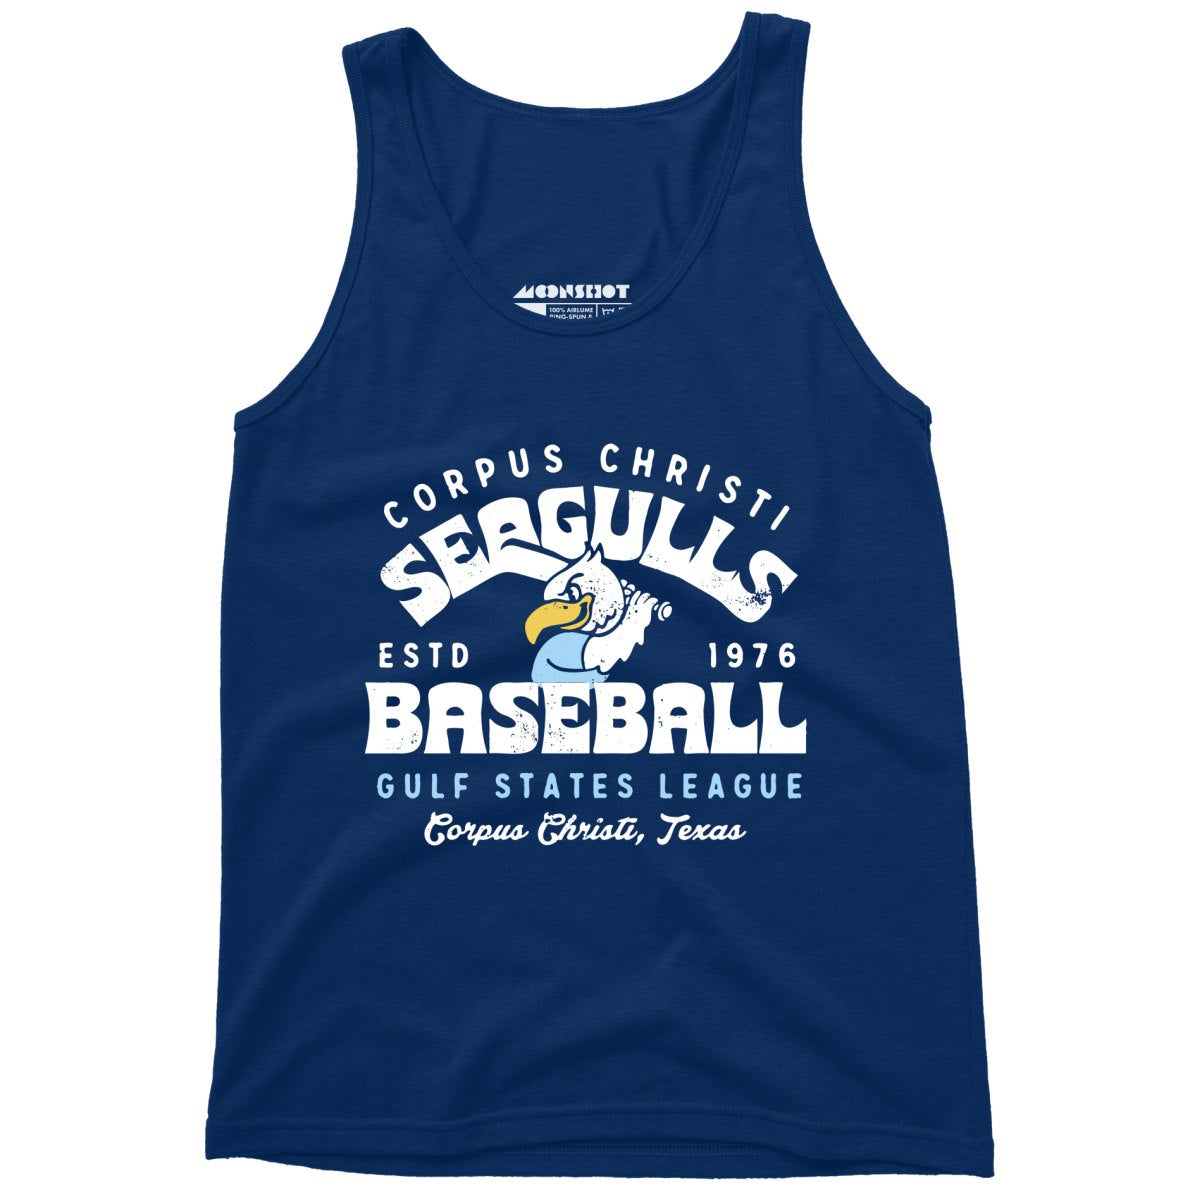 Corpus Christi Seagulls - Texas - Vintage Defunct Baseball Teams - Unisex Tank Top